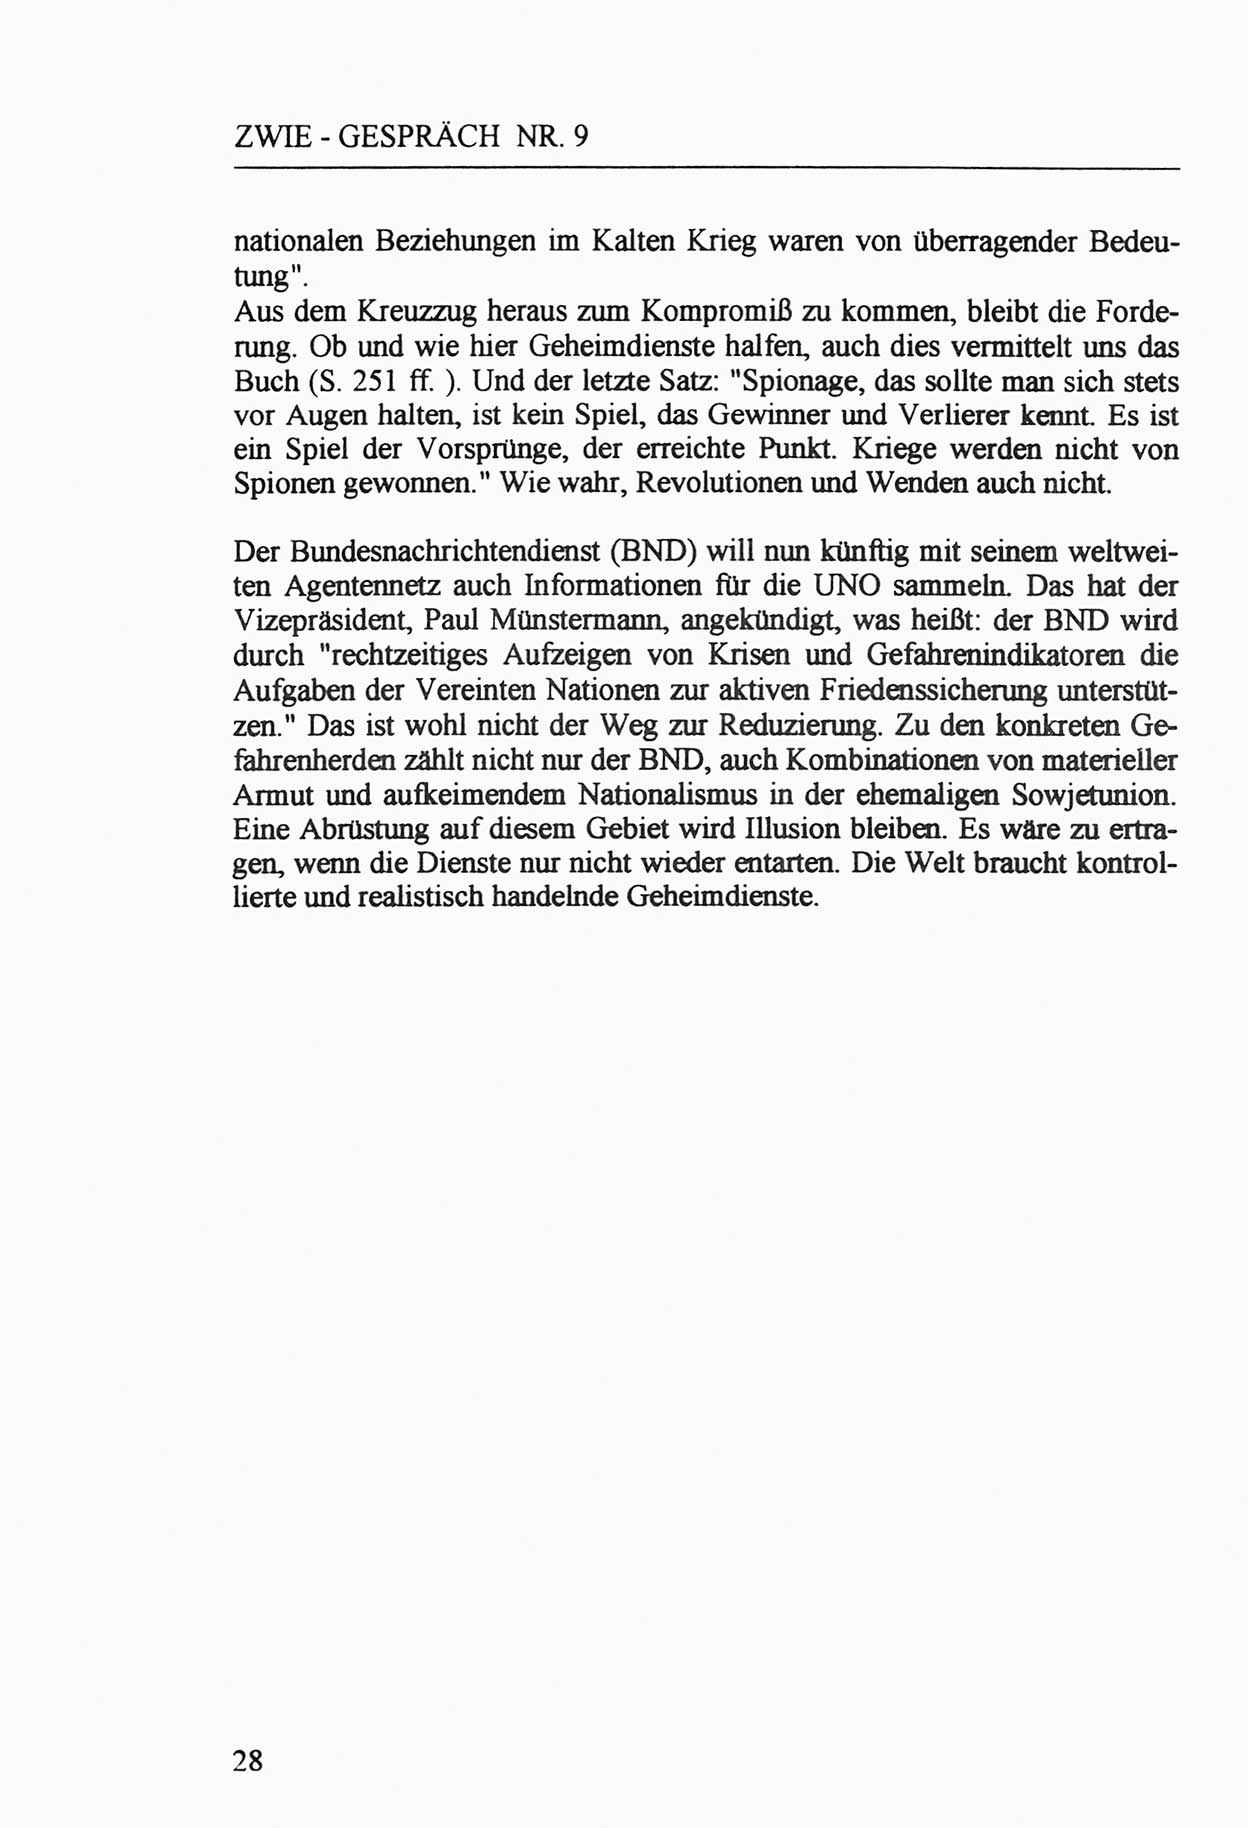 Zwie-Gespräch, Beiträge zur Aufarbeitung der Staatssicherheits-Vergangenheit [Deutsche Demokratische Republik (DDR)], Ausgabe Nr. 9, Berlin 1992, Seite 28 (Zwie-Gespr. Ausg. 9 1992, S. 28)